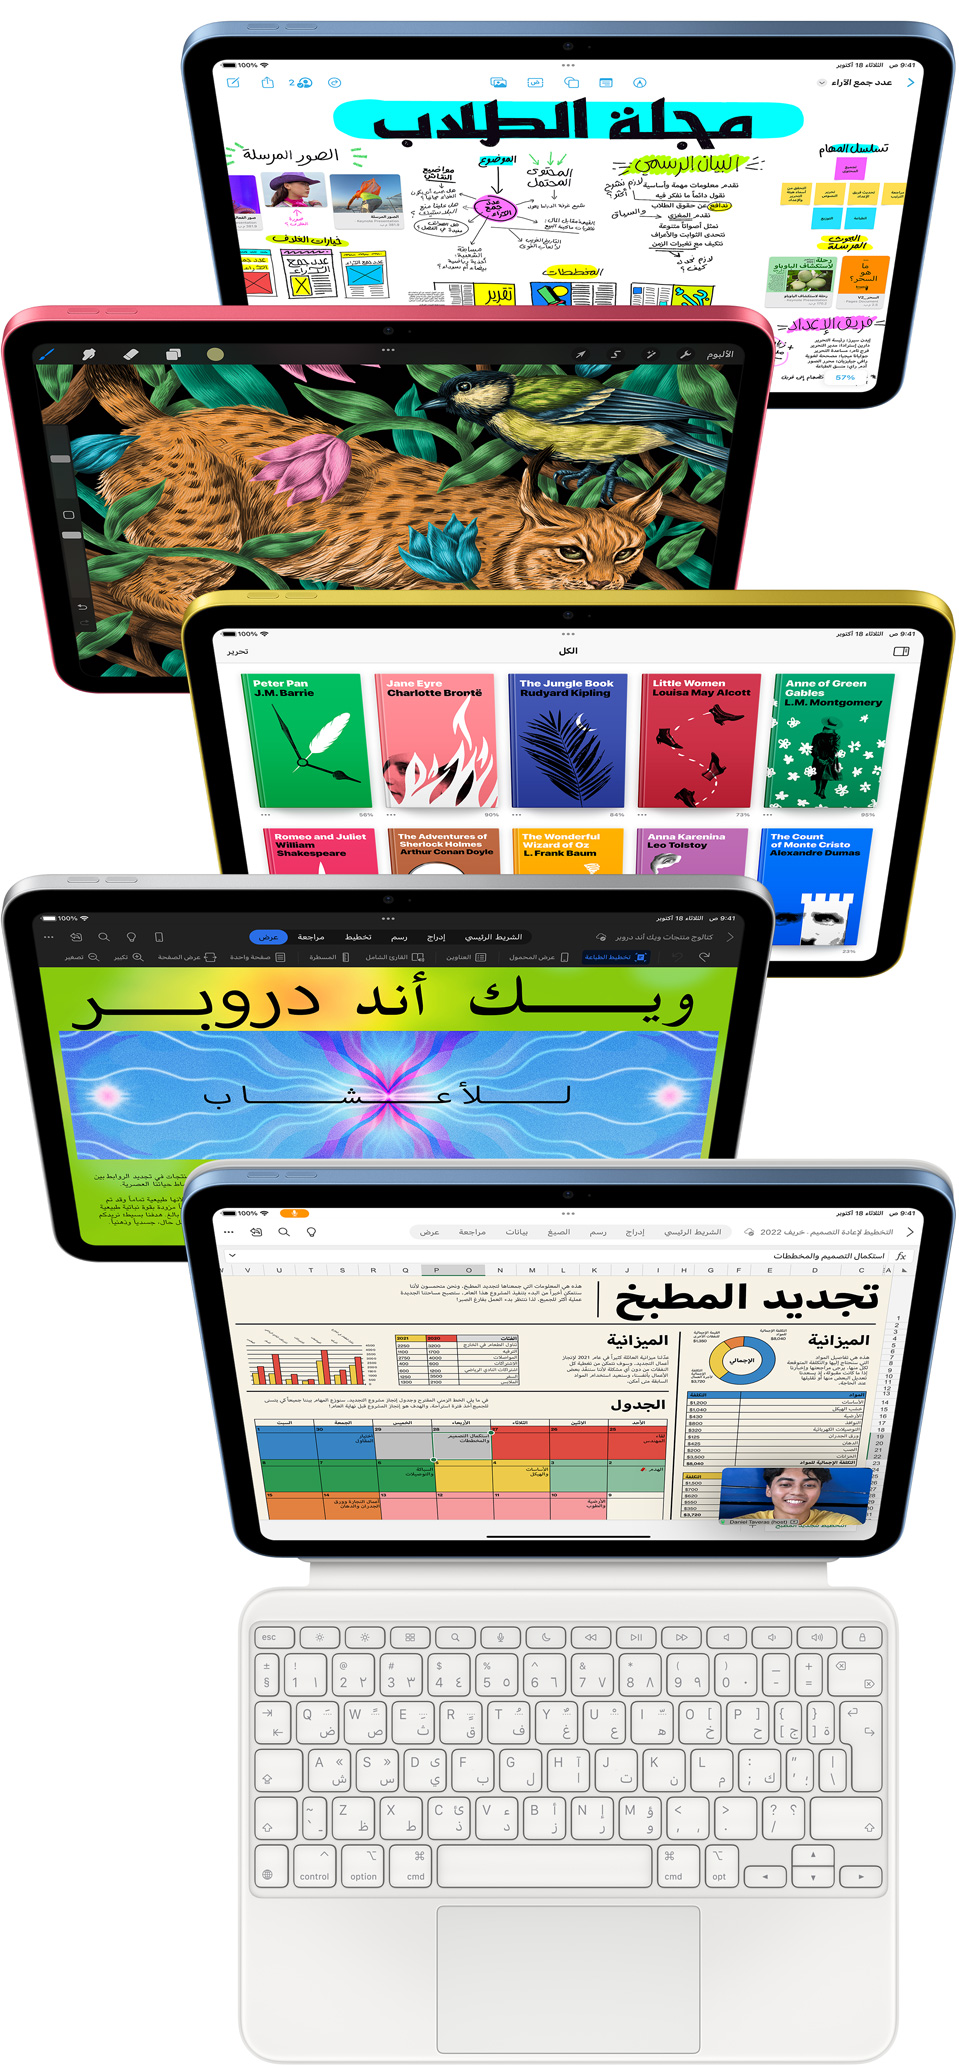 صور لشاشة iPad من الأمام تعرض مجموعة متنوعة من تطبيقات Apple وتطبيقات App Store‏.